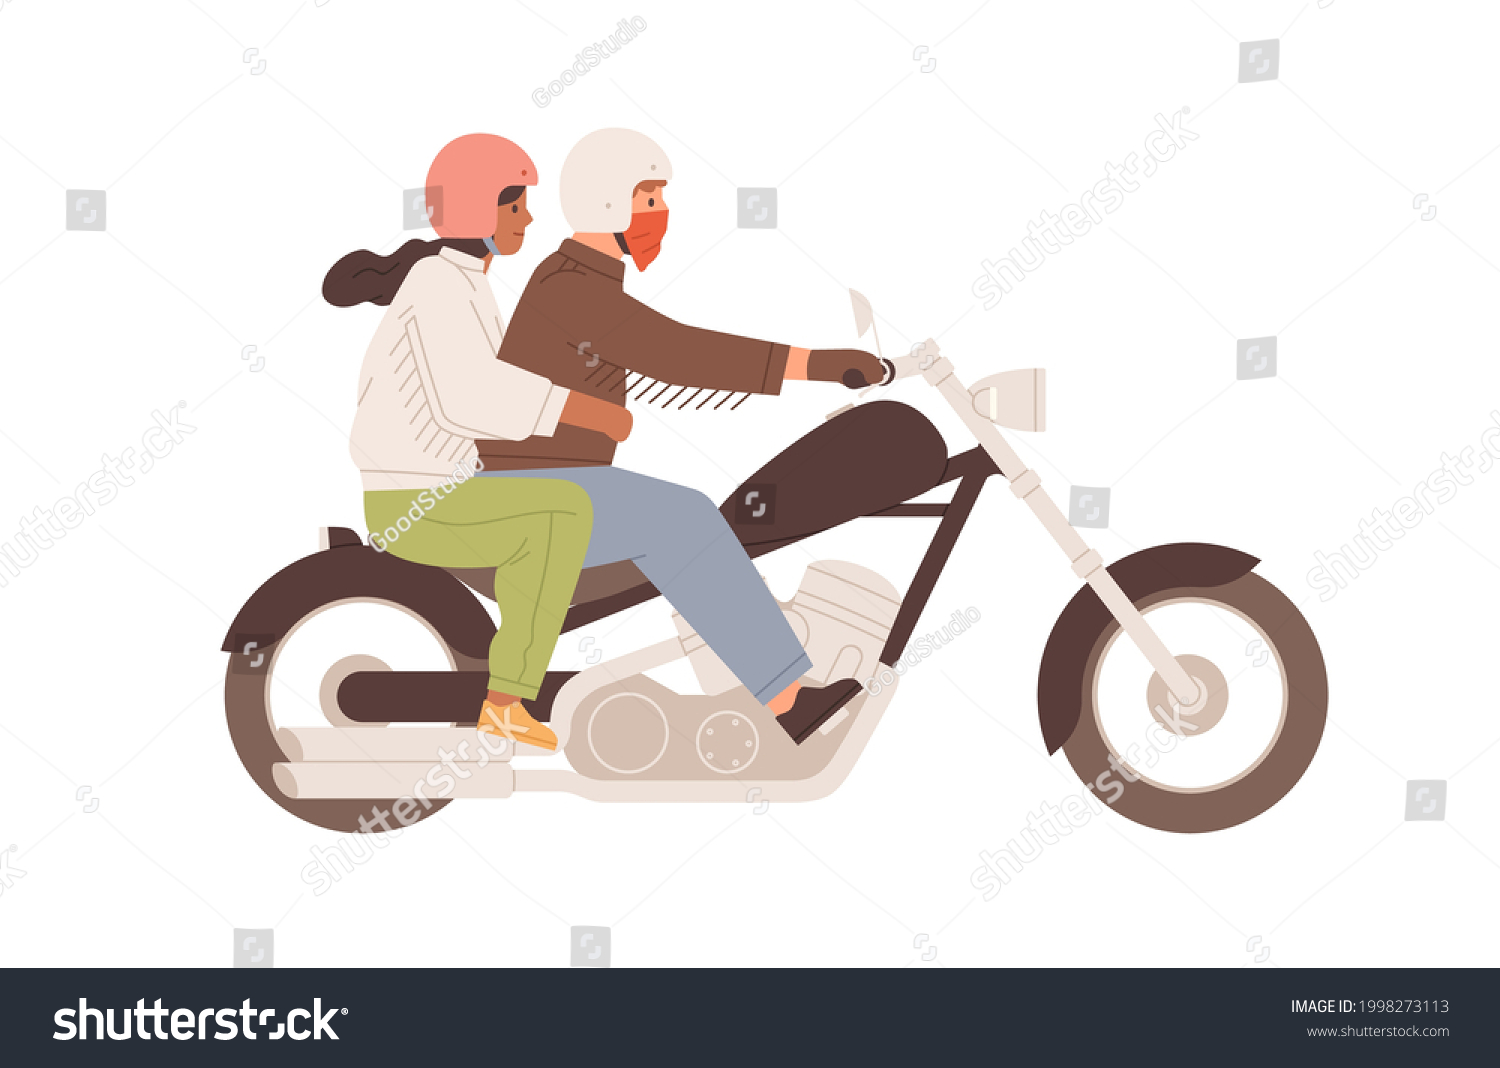 Мужчина с девушкой на мотоцикле логотип.